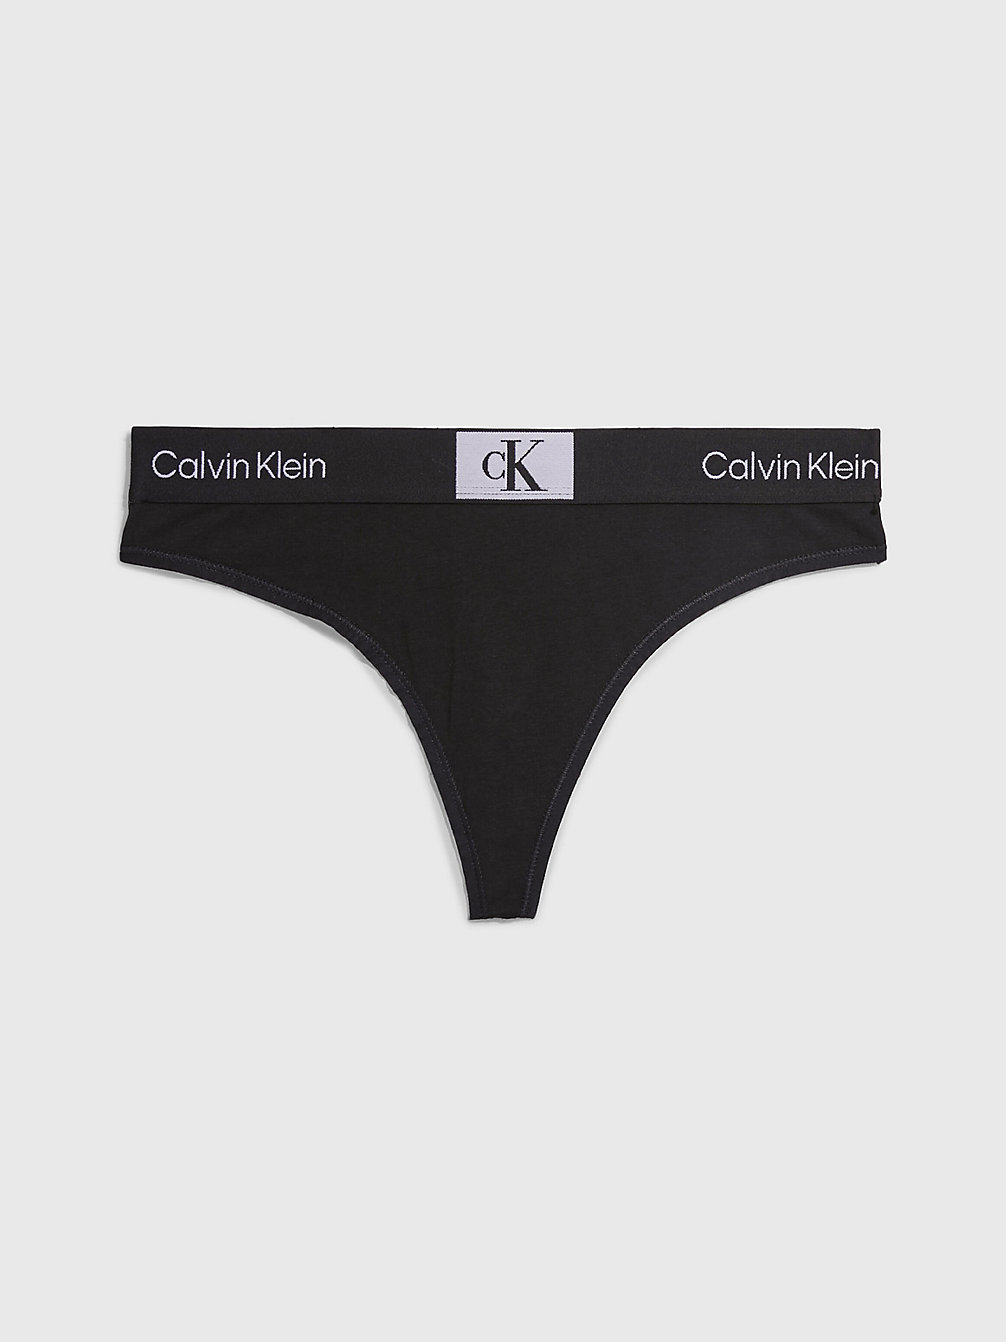 Women's Underwear Sets - Bra & Knicker Sets | Calvin Klein®